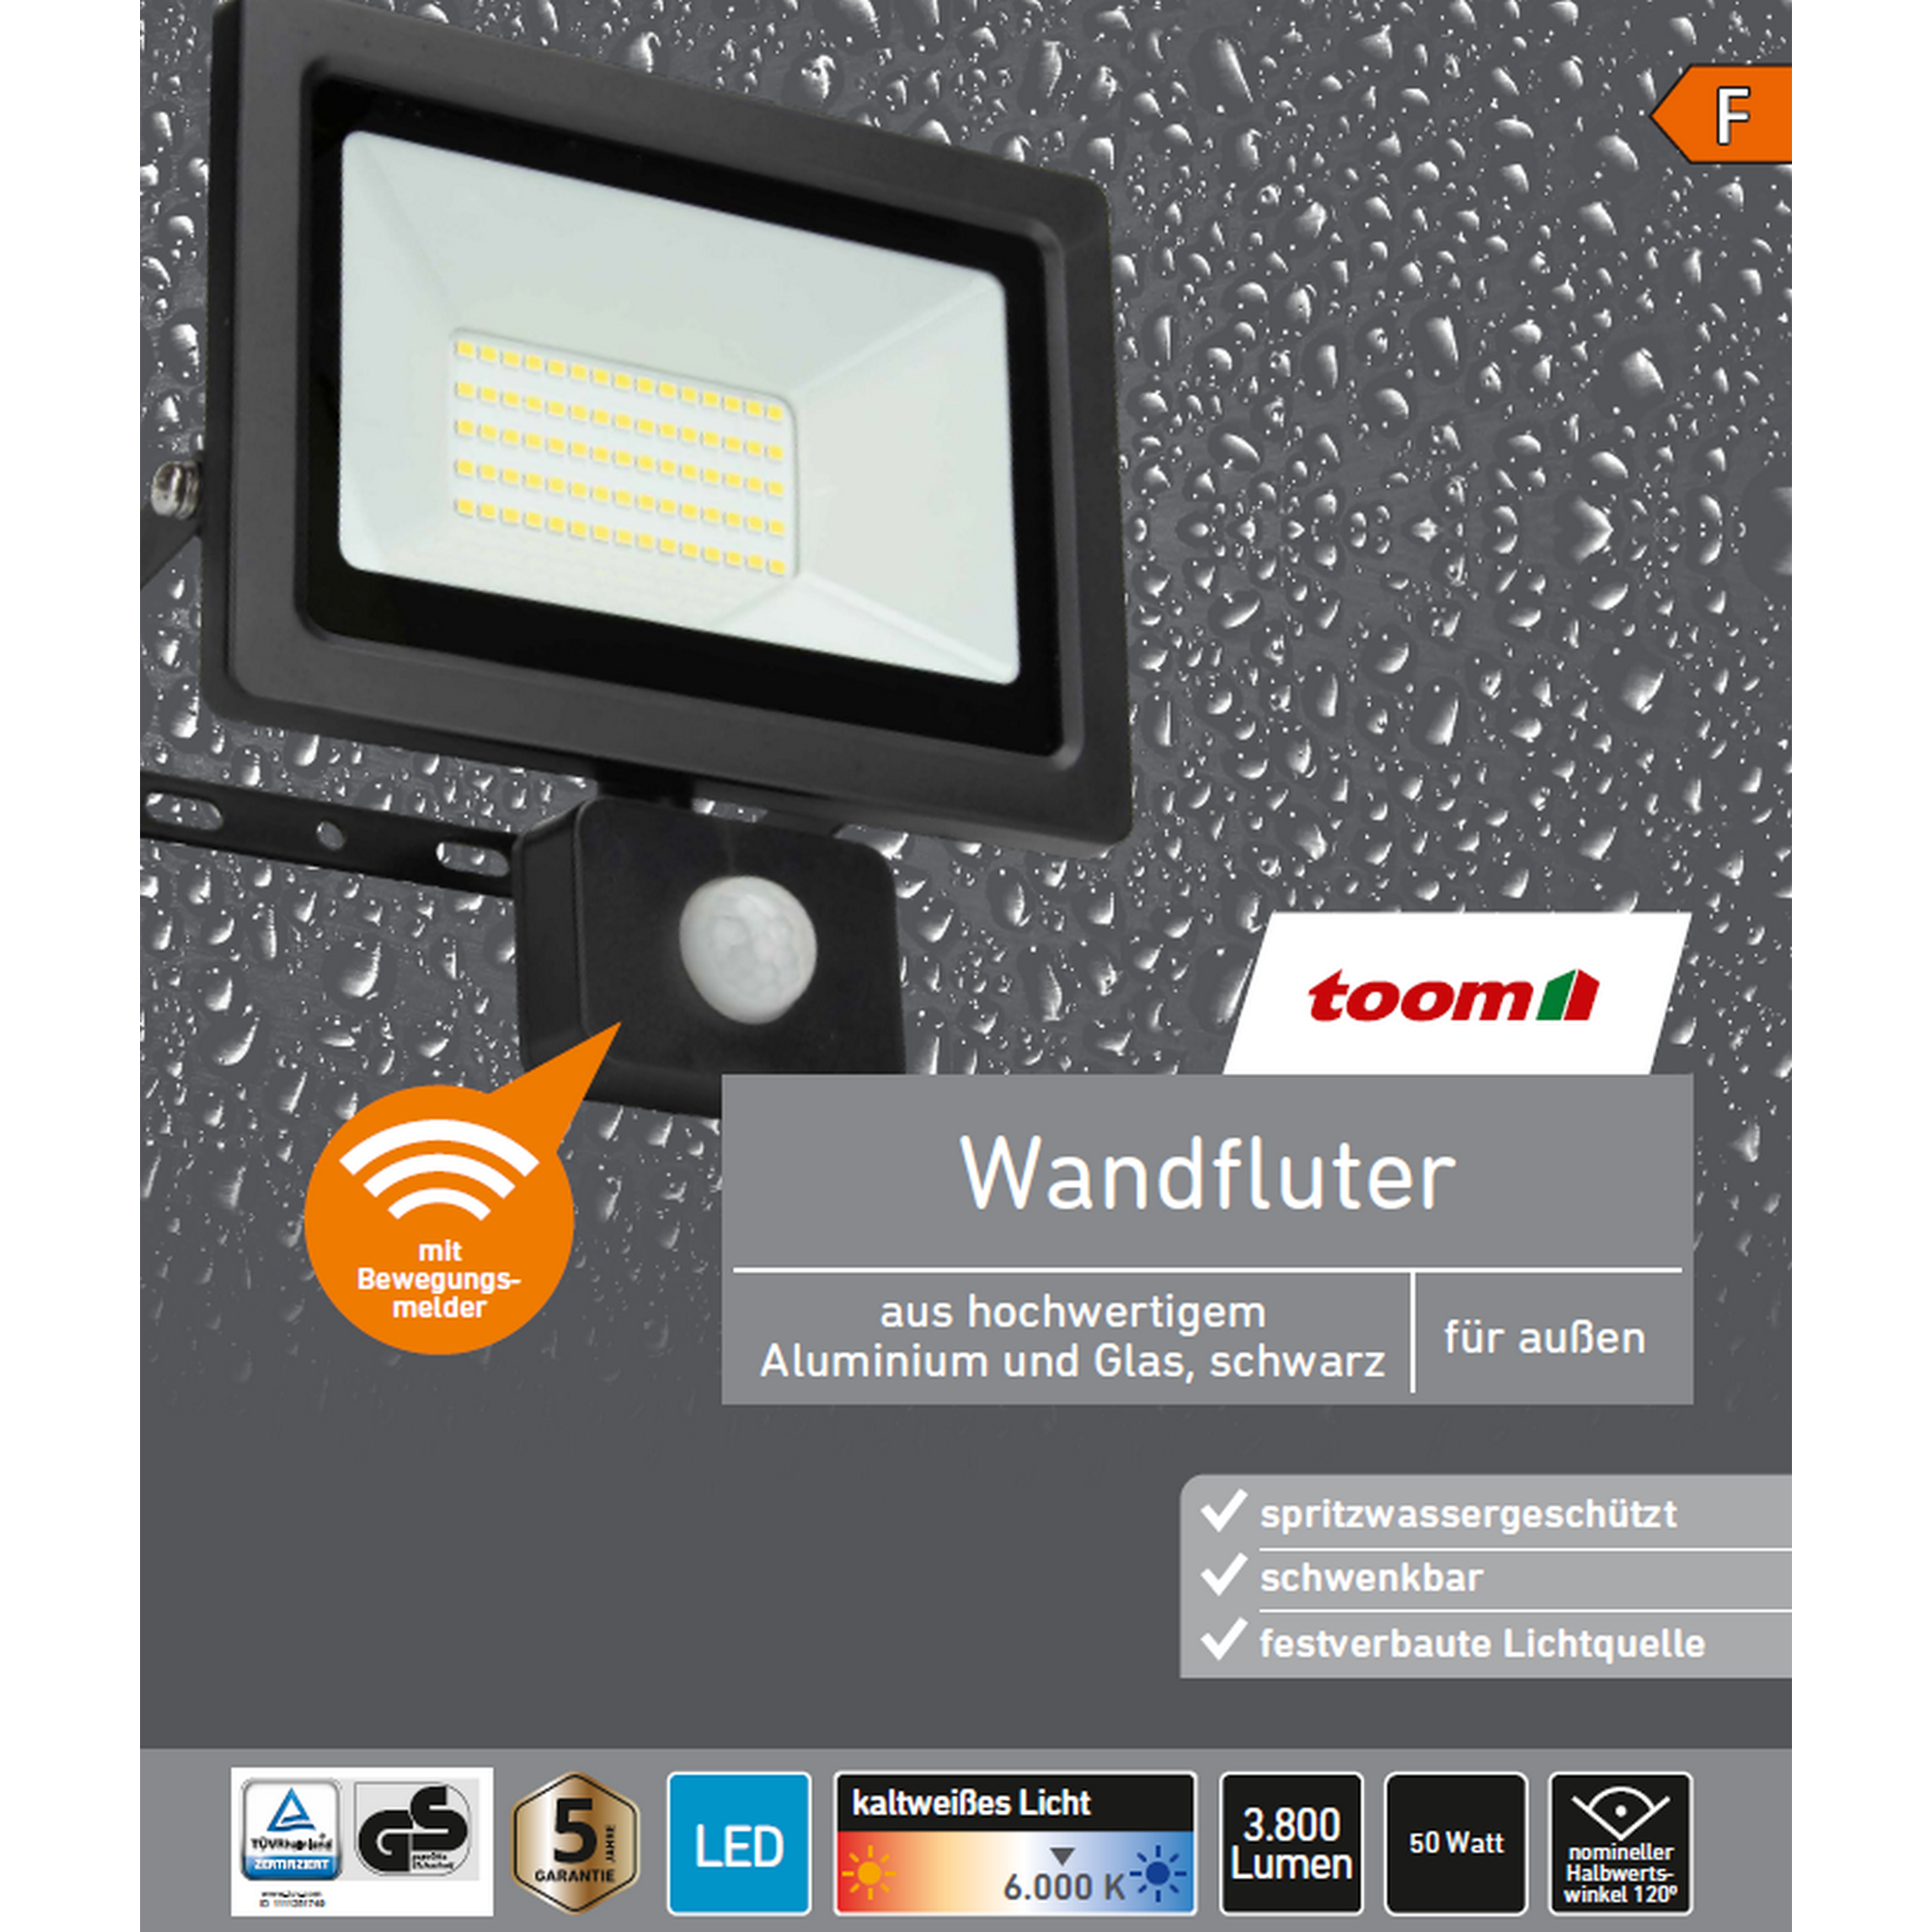 LED-Wandfluter mit Bewegungsmelder schwarz 50 W 3800 lm + product picture